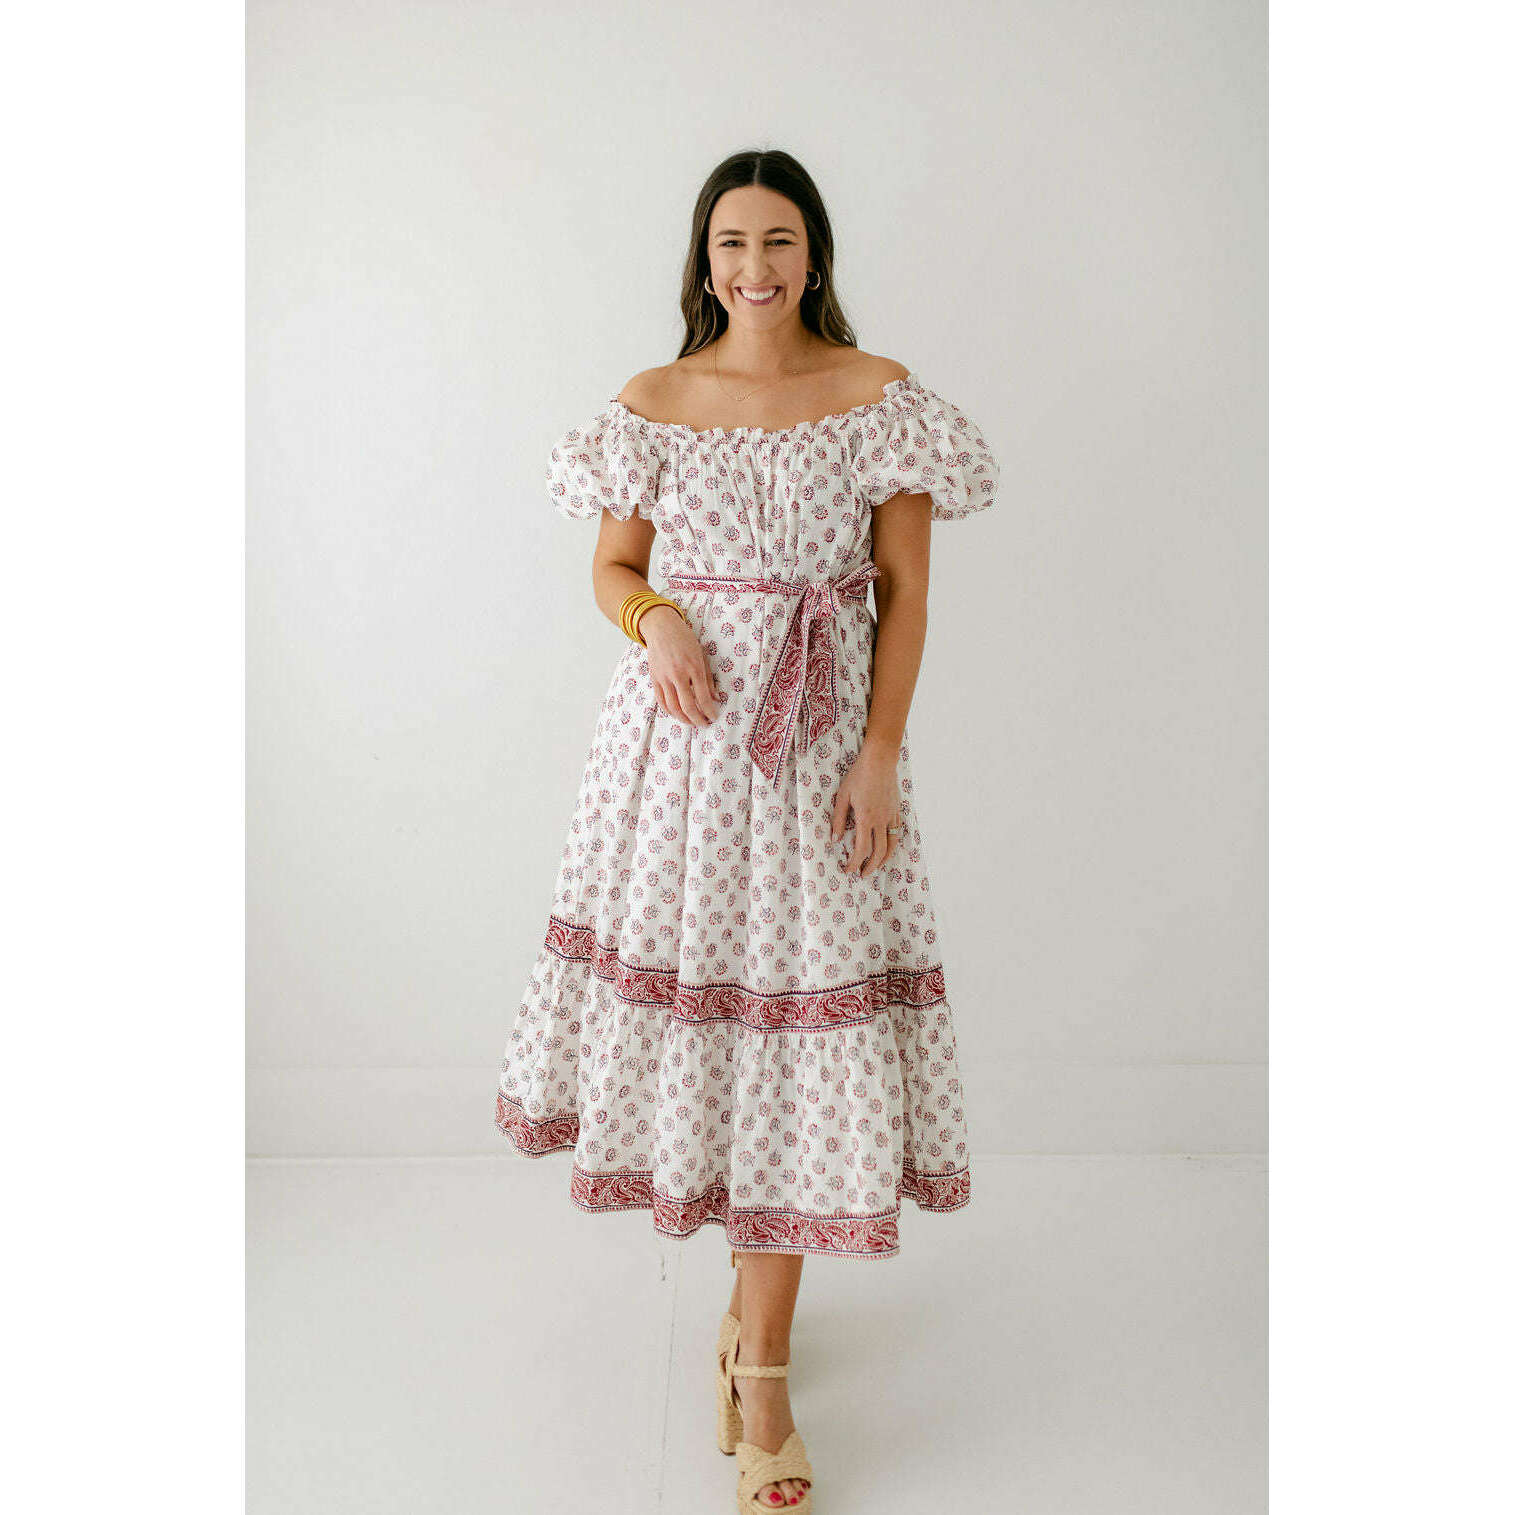 8.28 Boutique:Cleobella,Cleobella Elisa Midi Dress in Belize Blossom,Dress